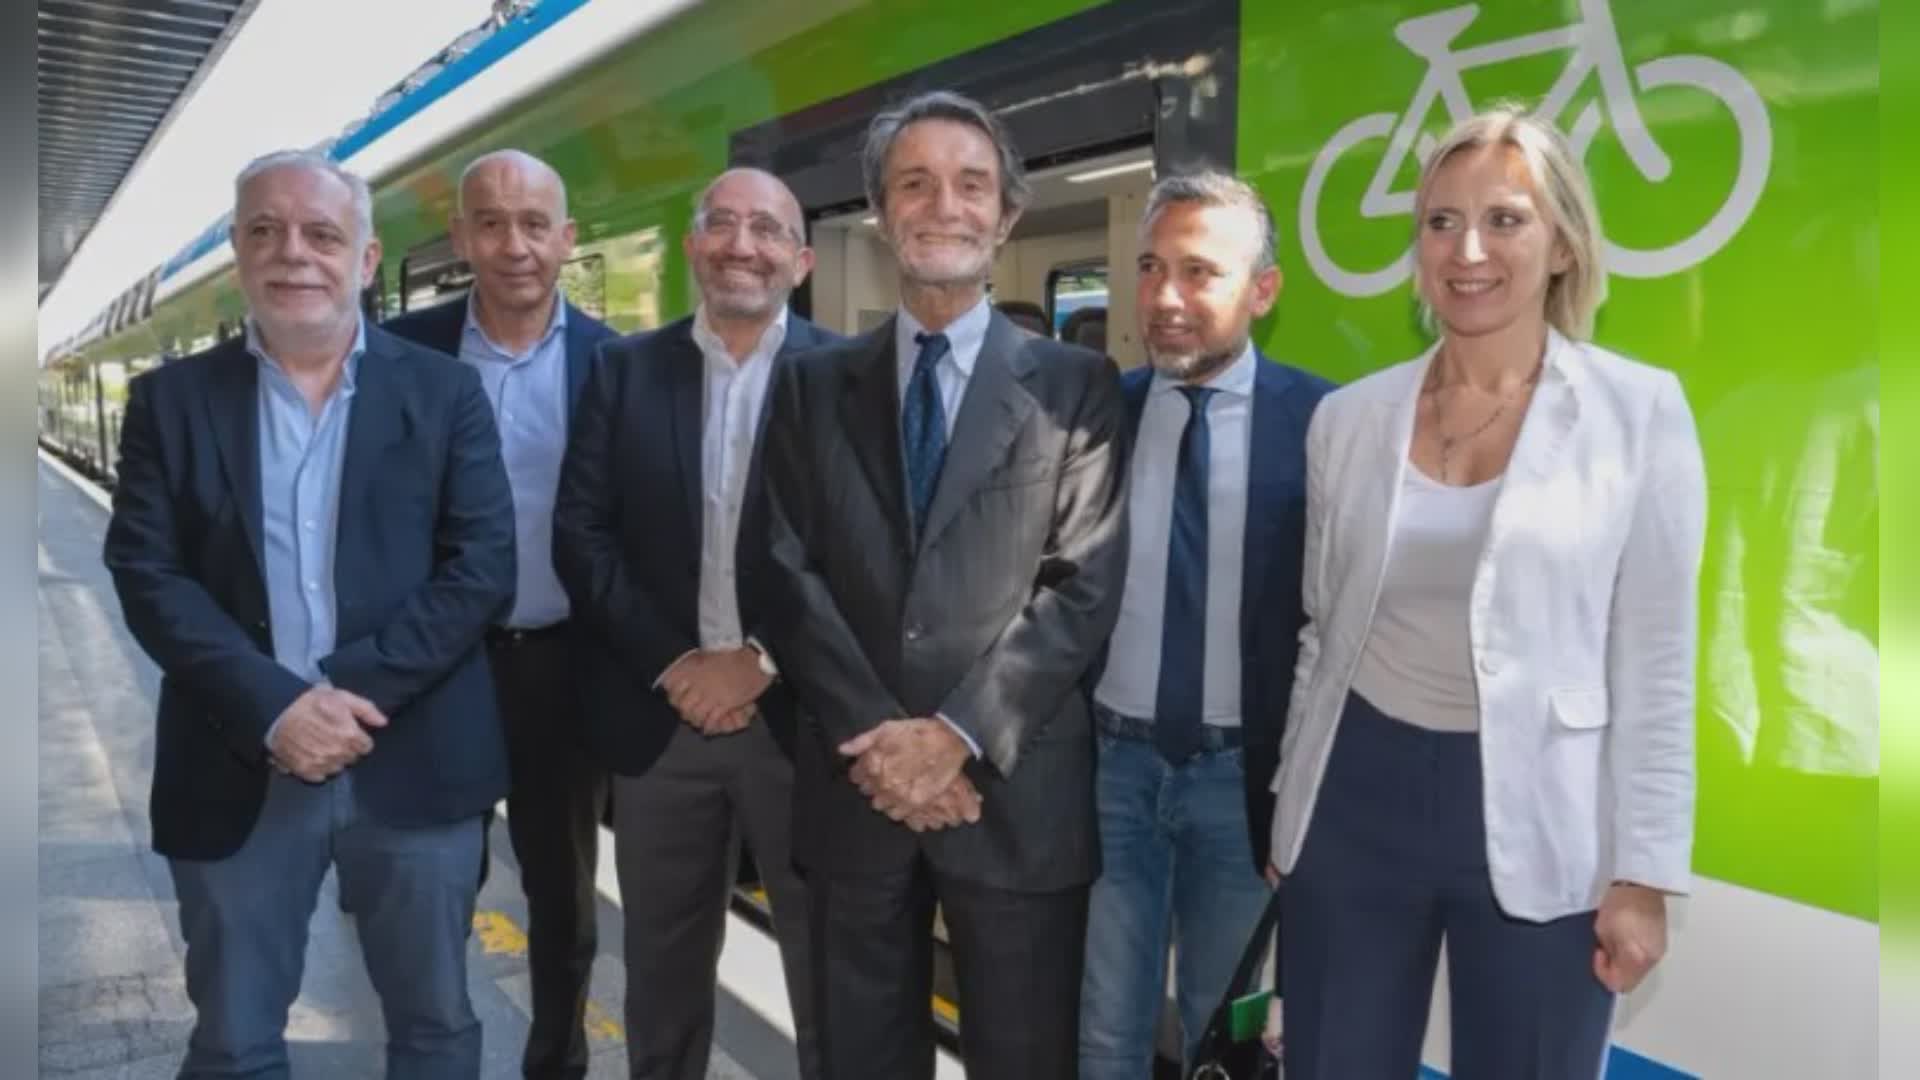 Lombardia, presentato treno n. 111. Il presidente Fontana: "Entro 2025 in servizio tutti nuovi treni"